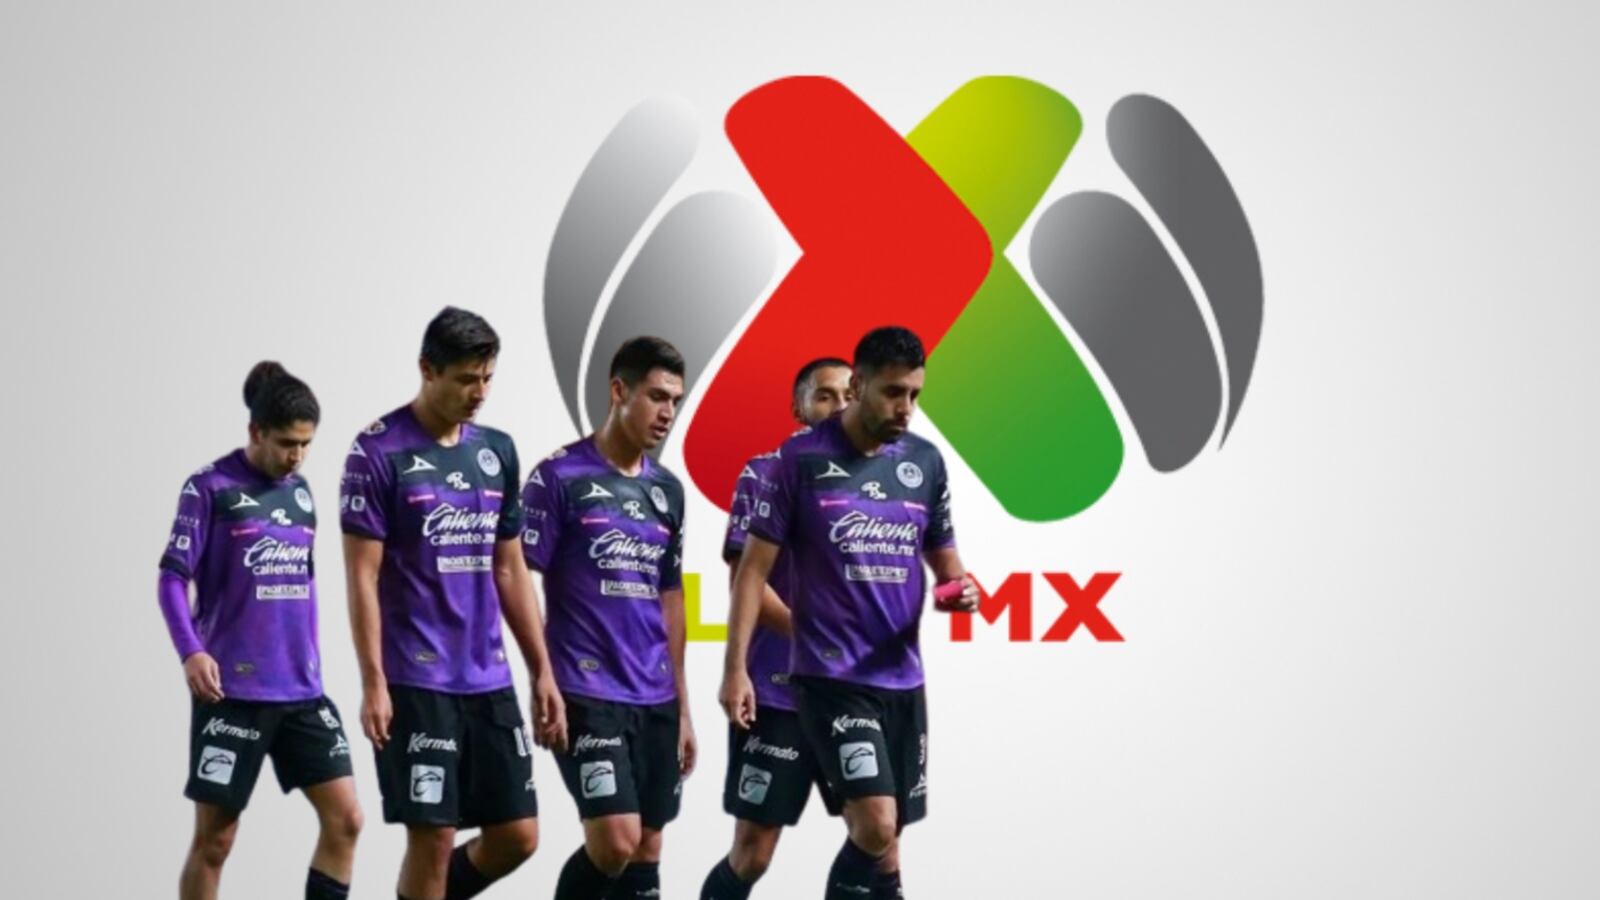 ¿Adiós 1era división? Mazatlán recibe pésimas noticias tras los malos resultados